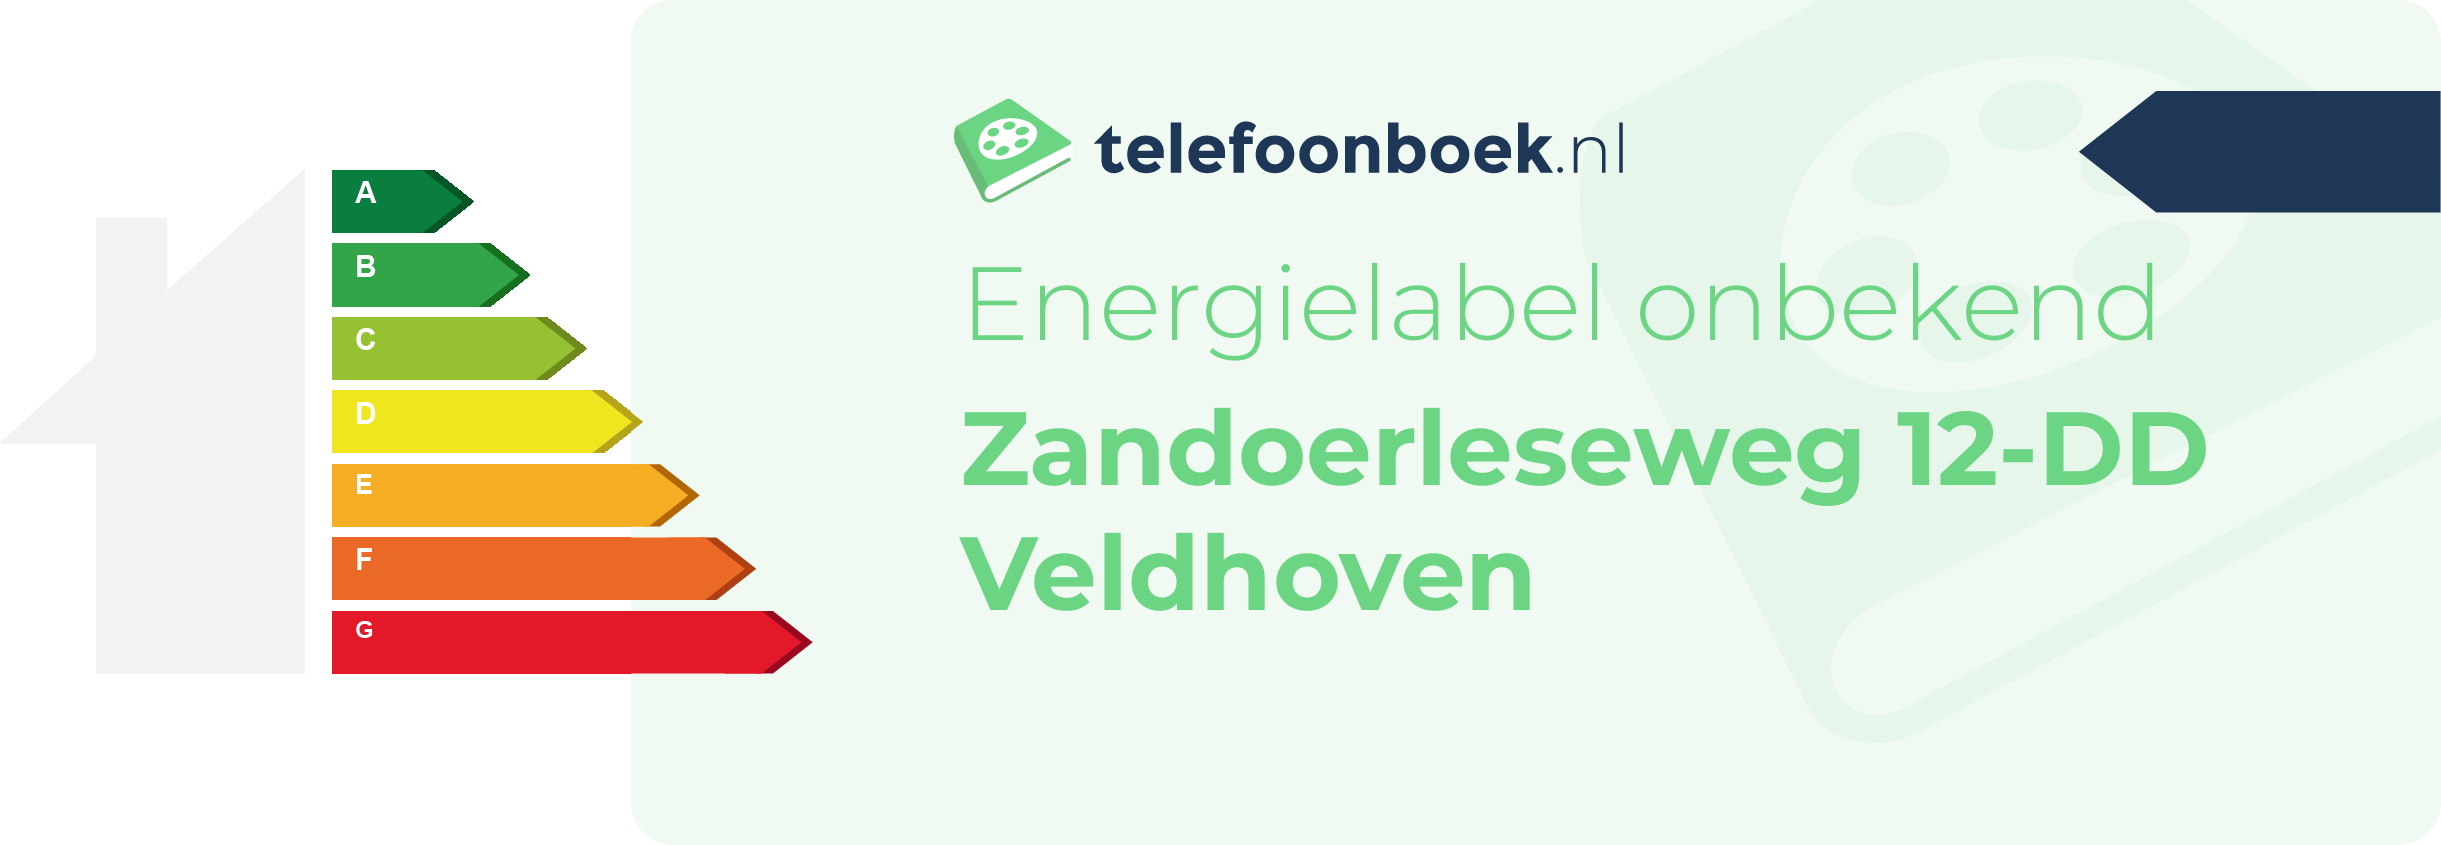 Energielabel Zandoerleseweg 12-DD Veldhoven